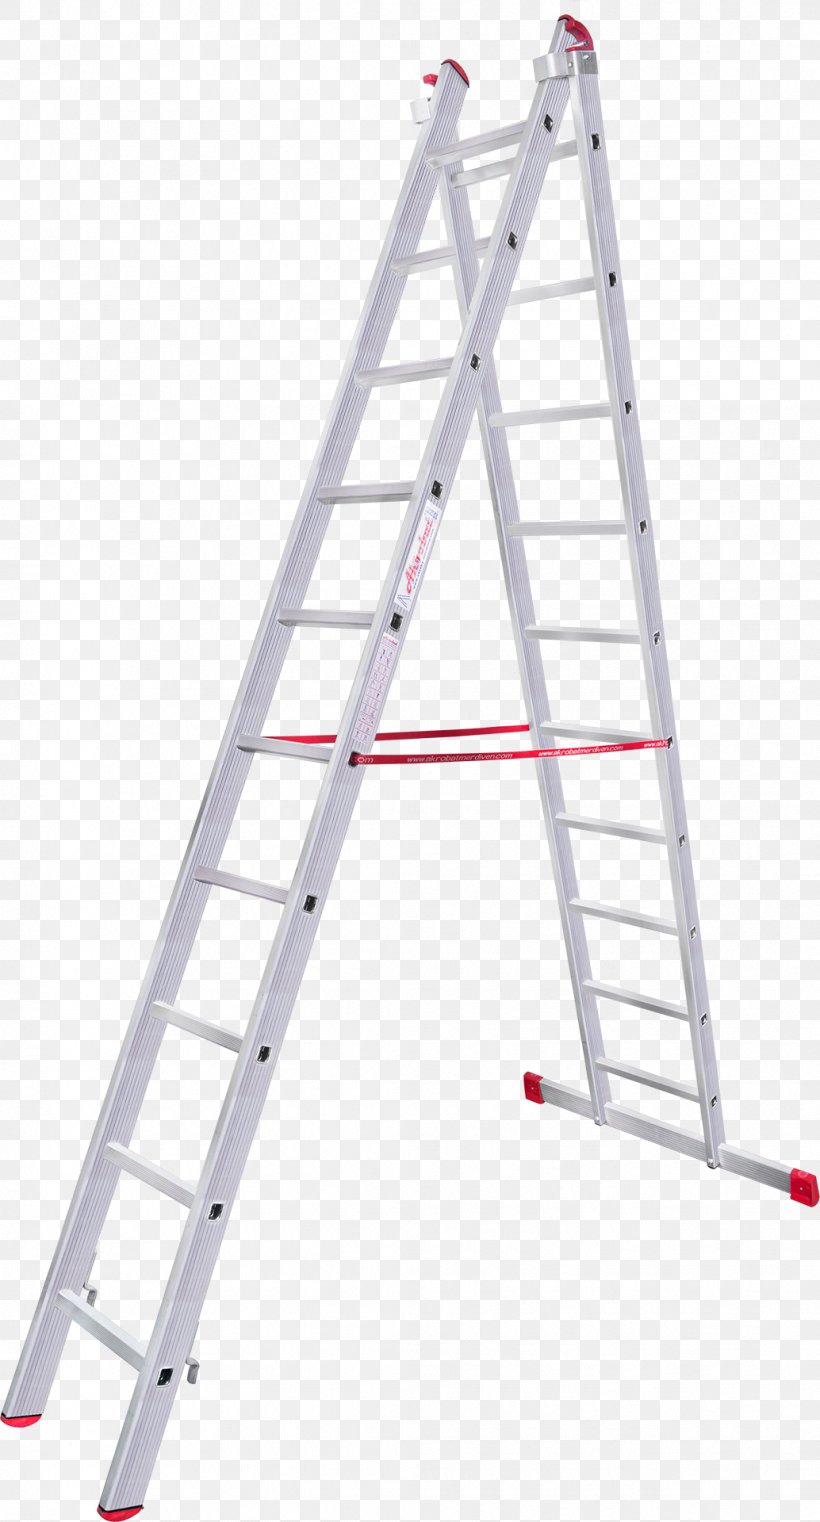 Attic Ladder Aluminium Wing Enterprises, Inc. Building Insulation, PNG, 1034x1920px, Ladder, Aluminium, Architectural Engineering, Attic Ladder, Building Insulation Download Free